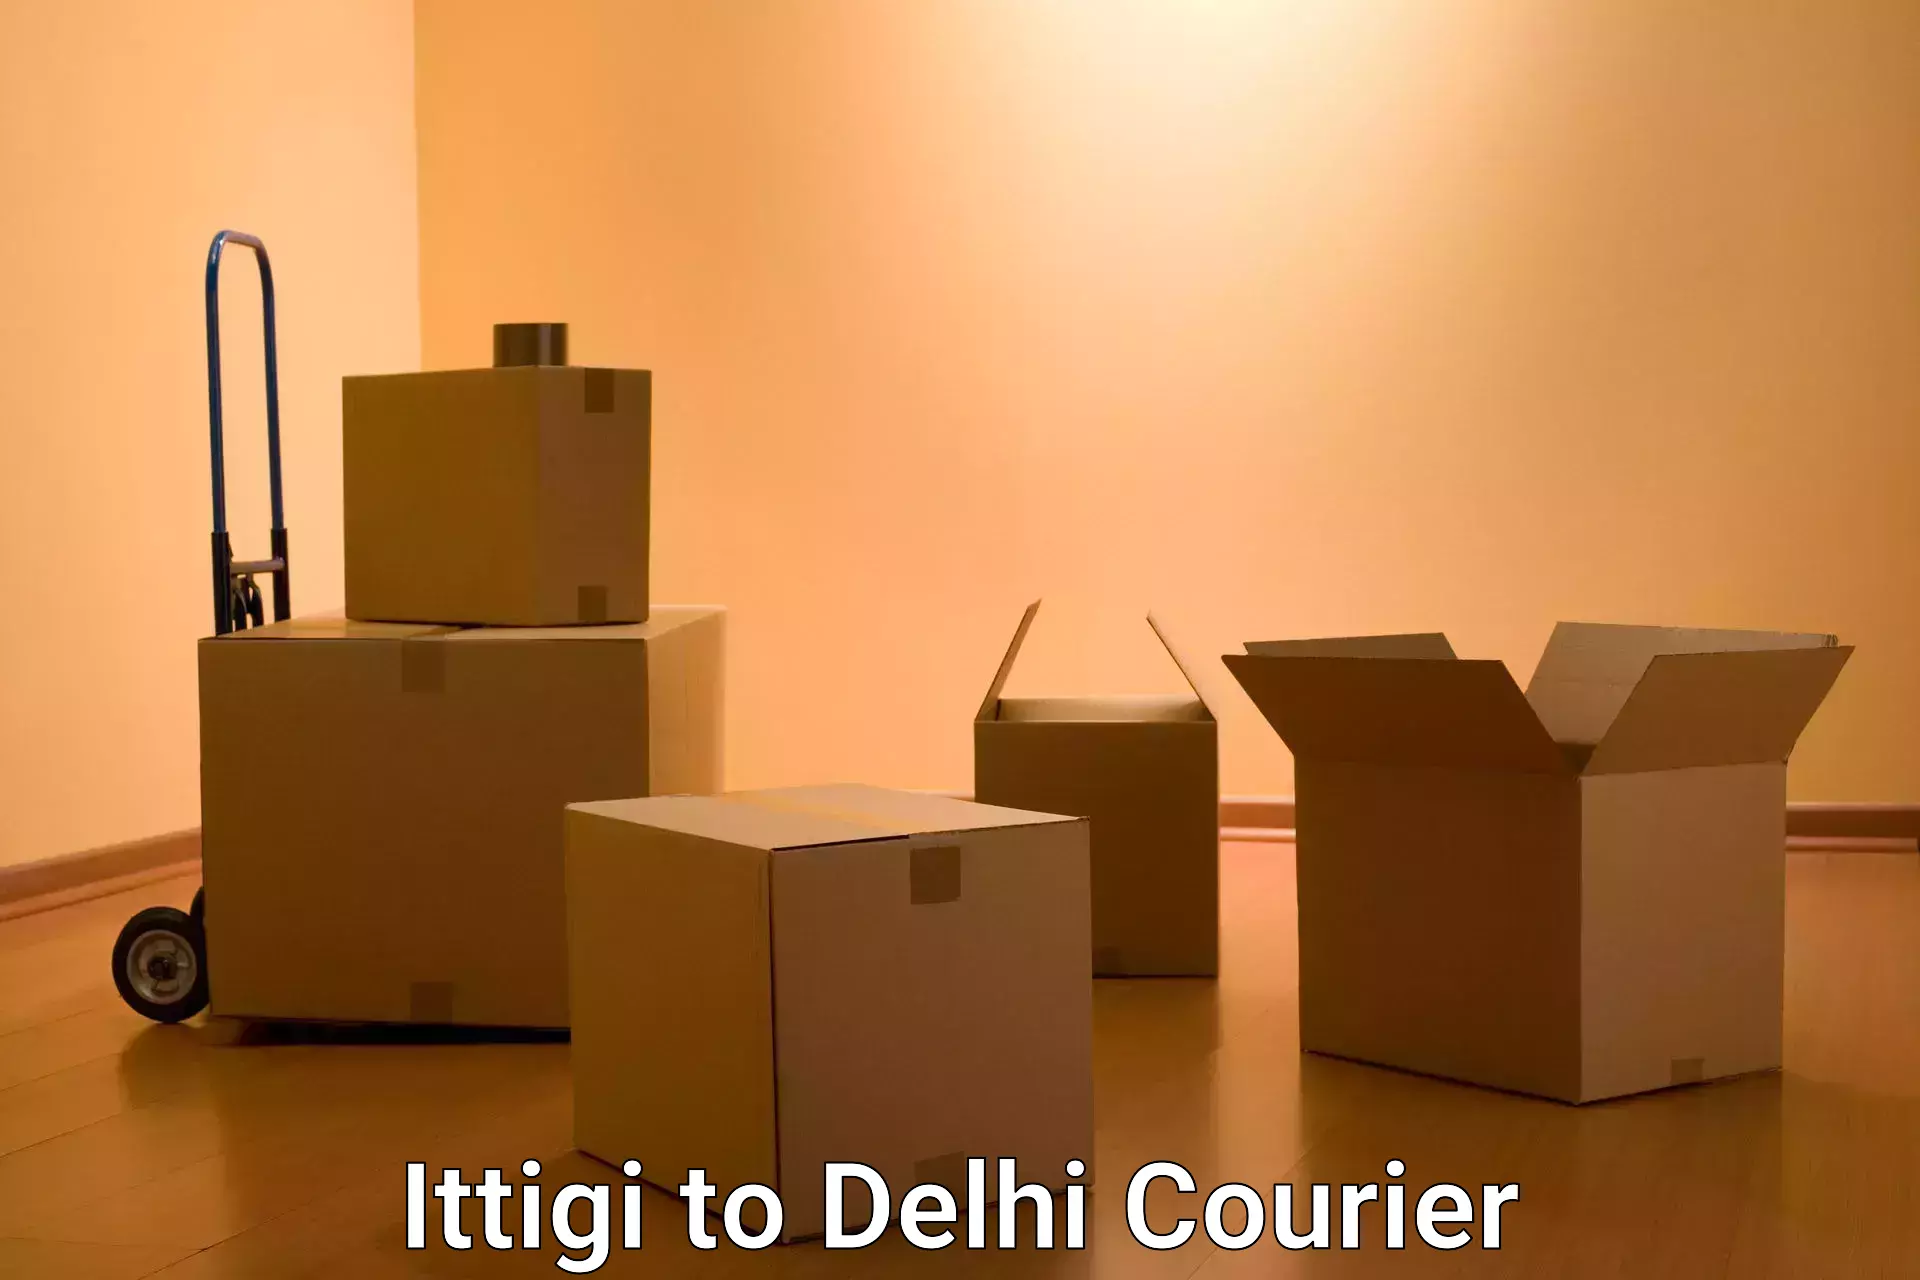 Courier service comparison Ittigi to Lodhi Road